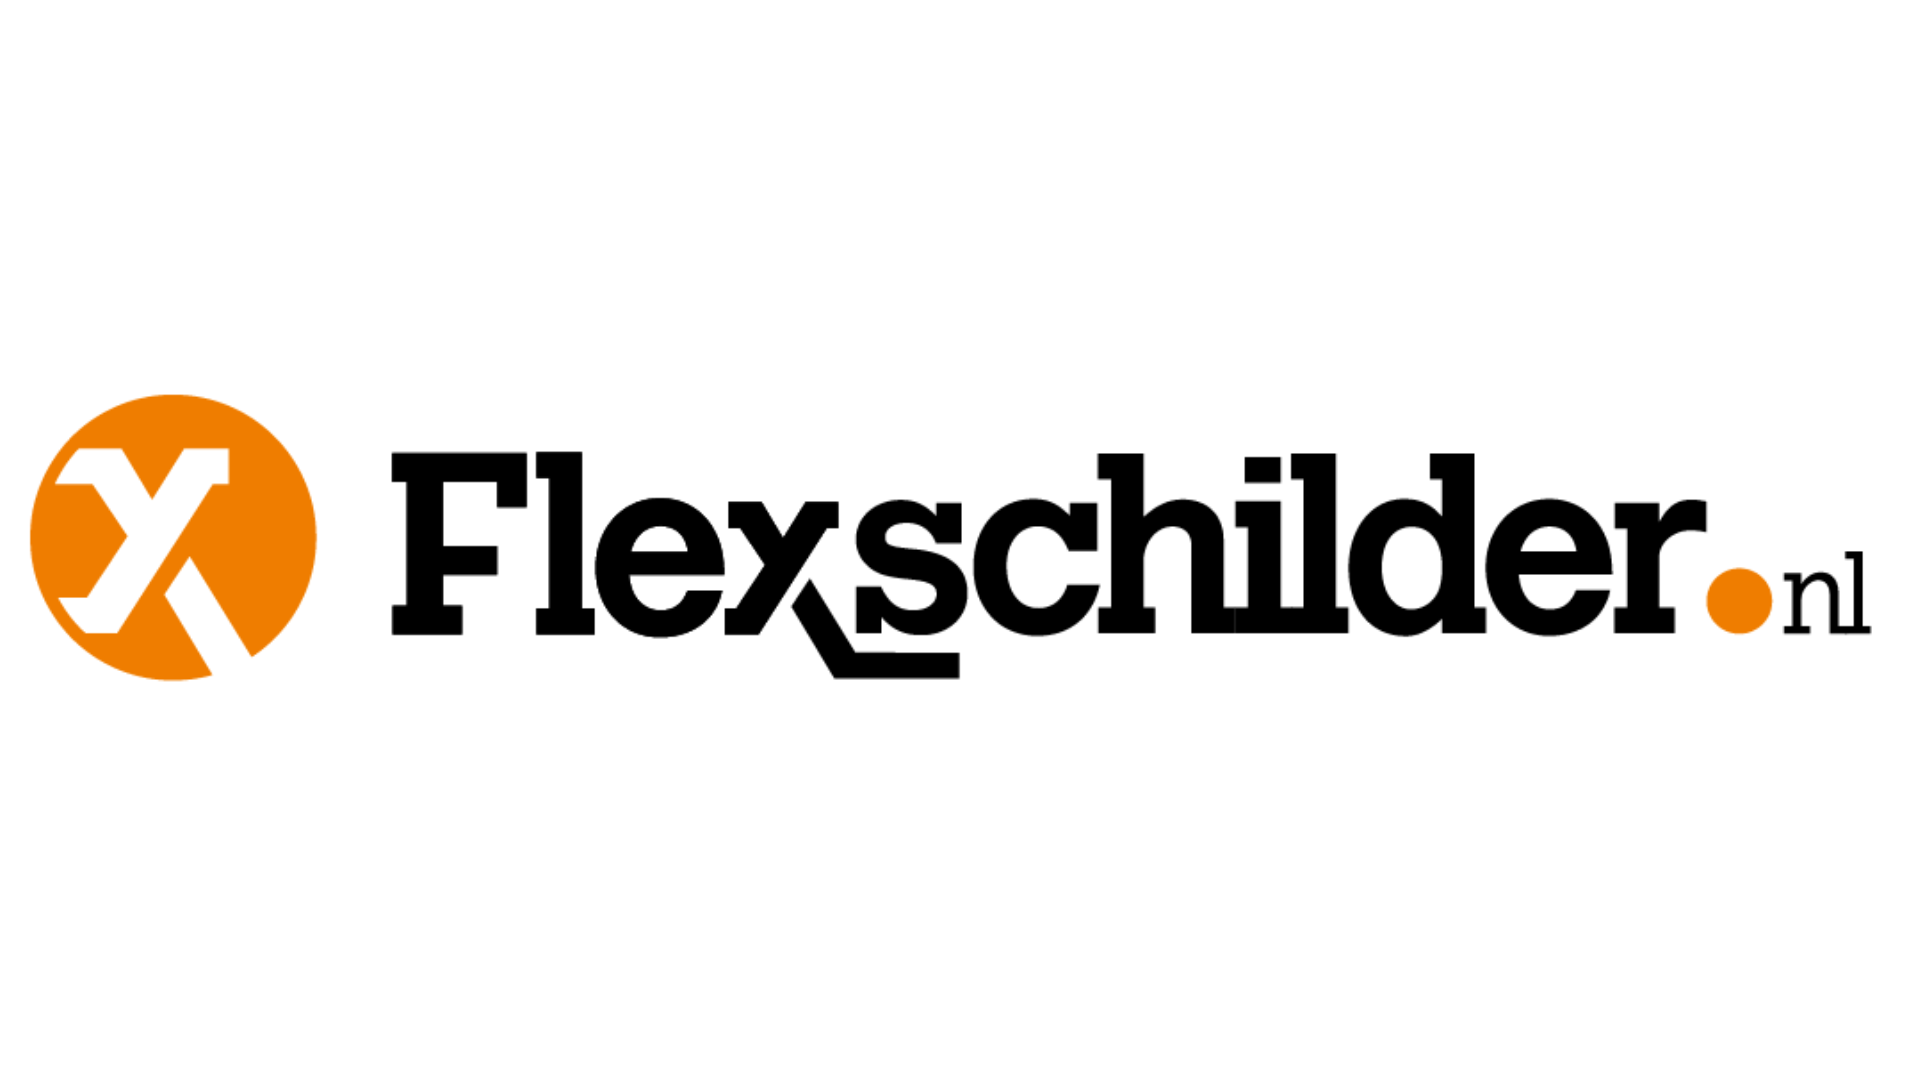 Flexschilder